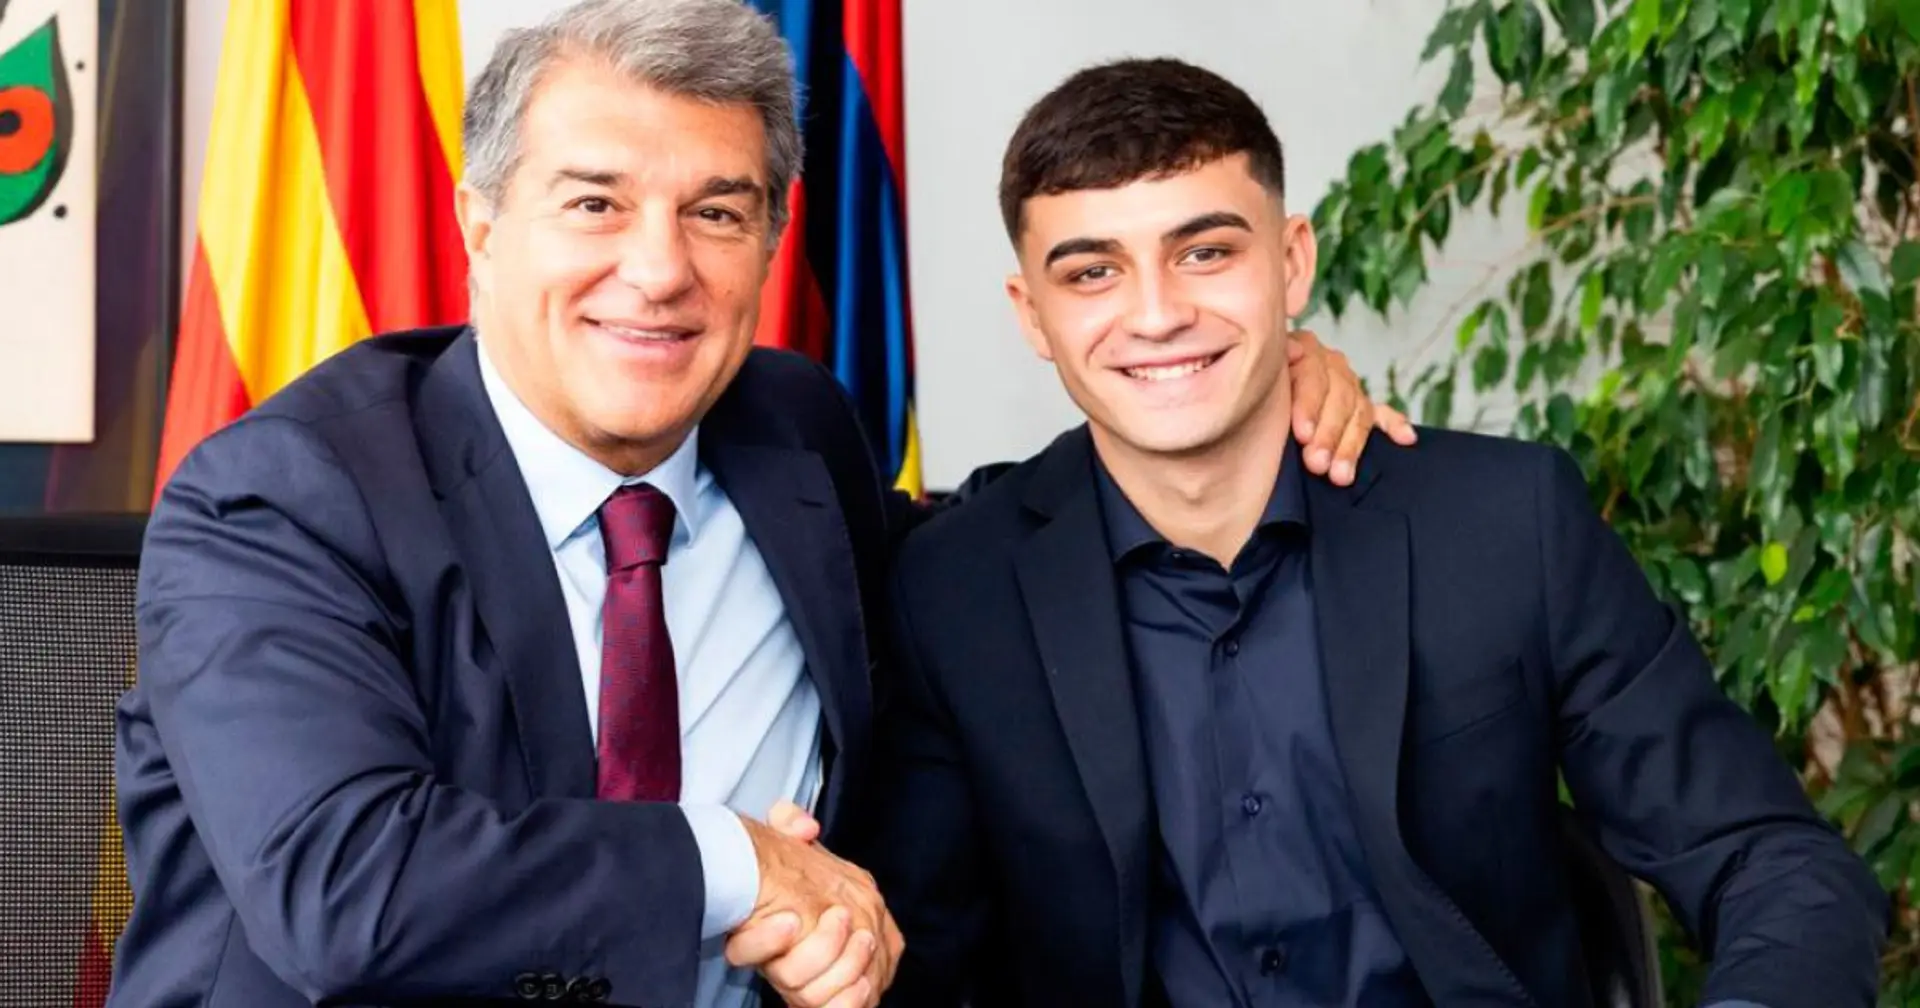 El Barça ofrece a Pedri un nuevo contrato utilizando la 'nueva política'